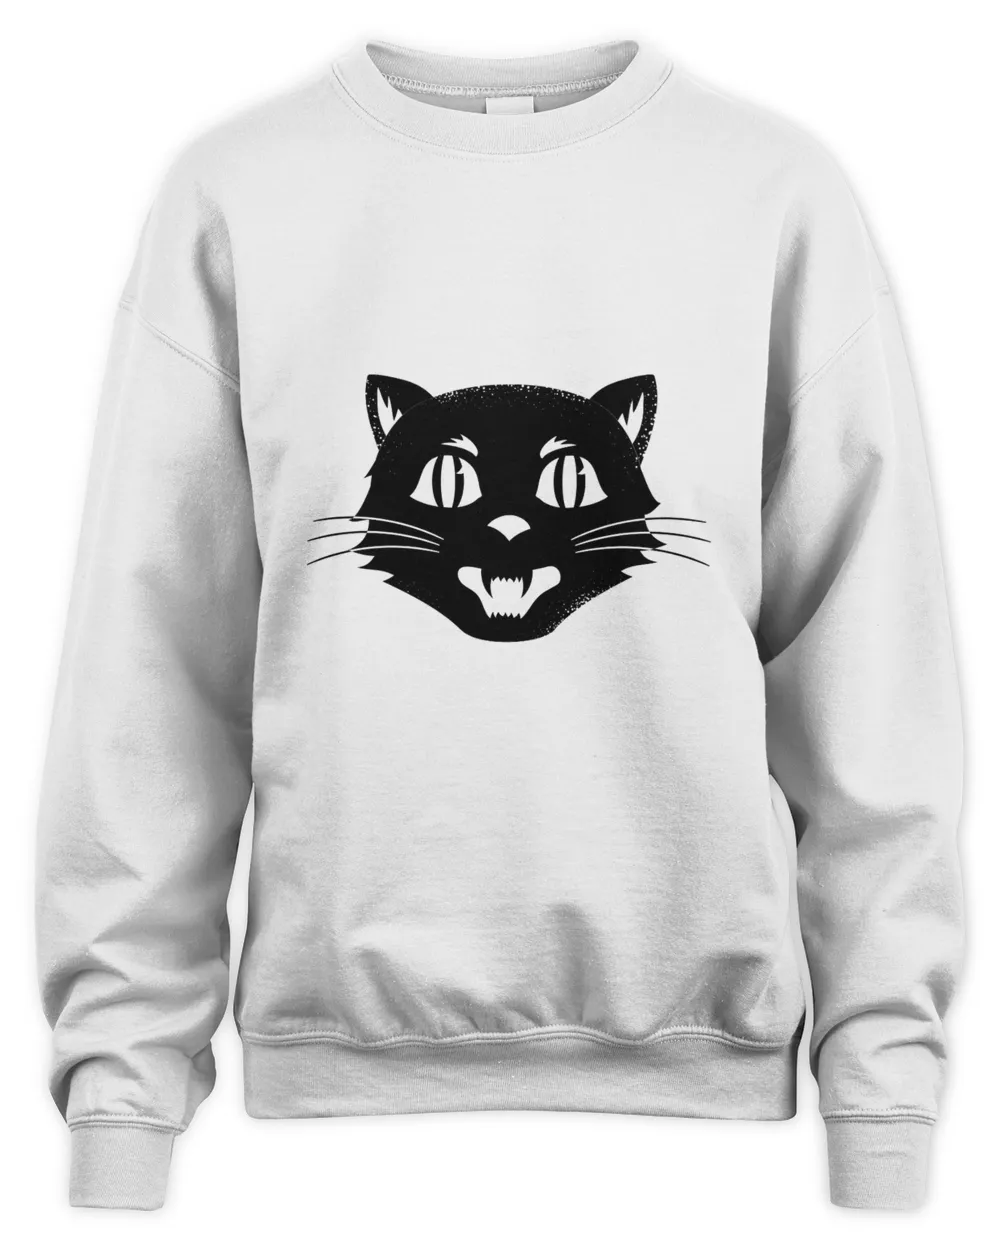 Vintage Halloween Cat black t shirt hoodie sweater